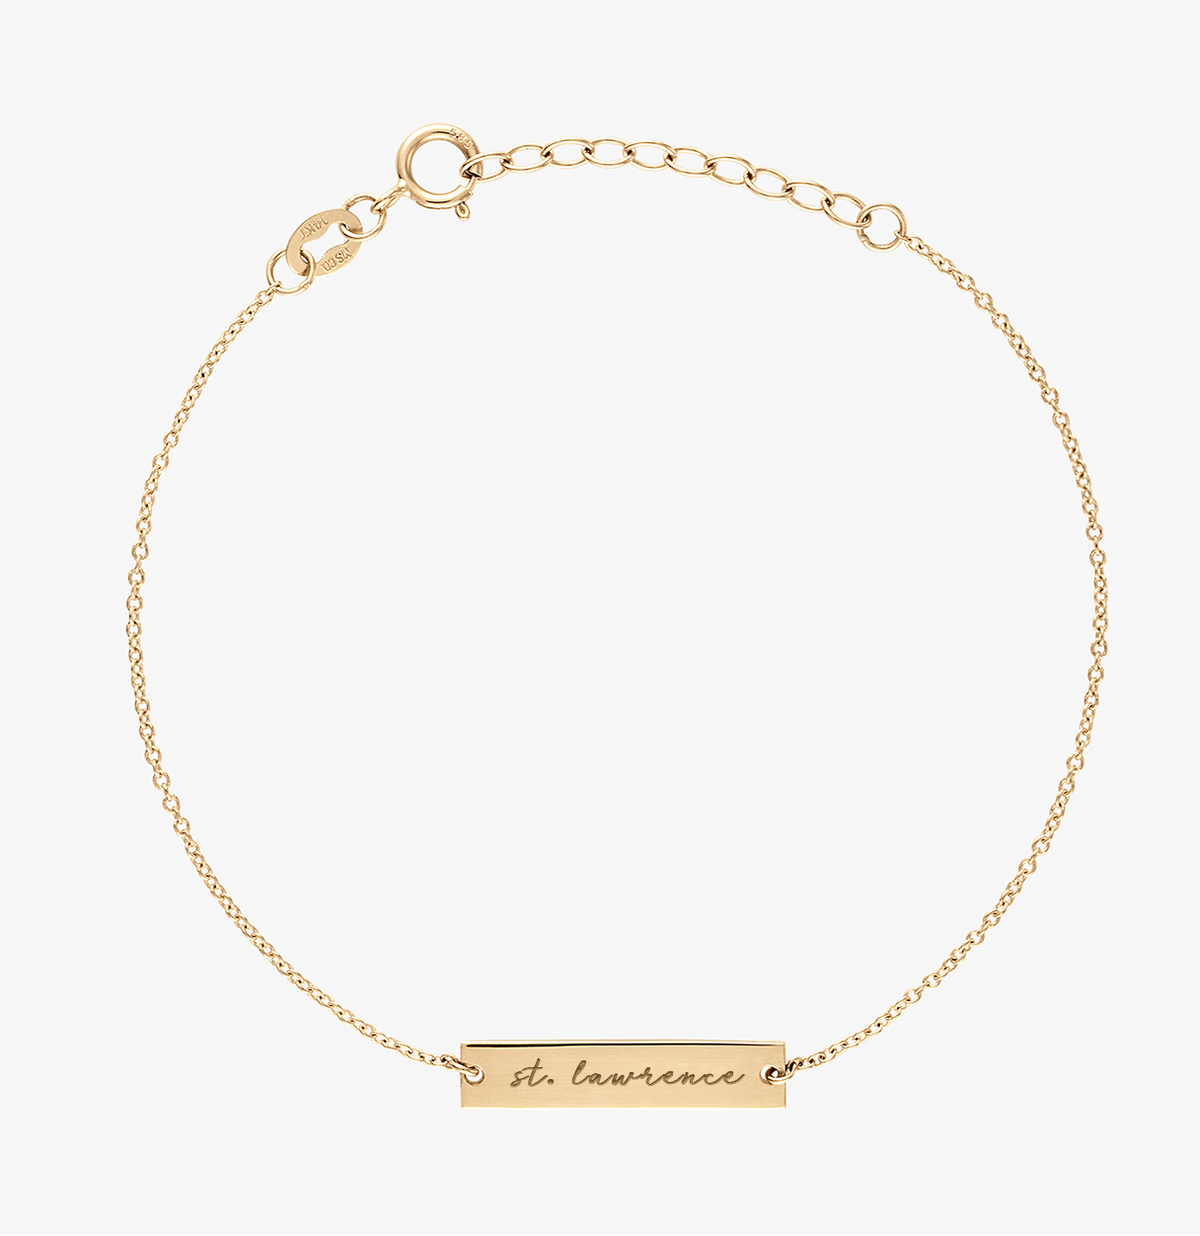 St. Lawrence Fides Et Veritas Double-Sided Bracelet